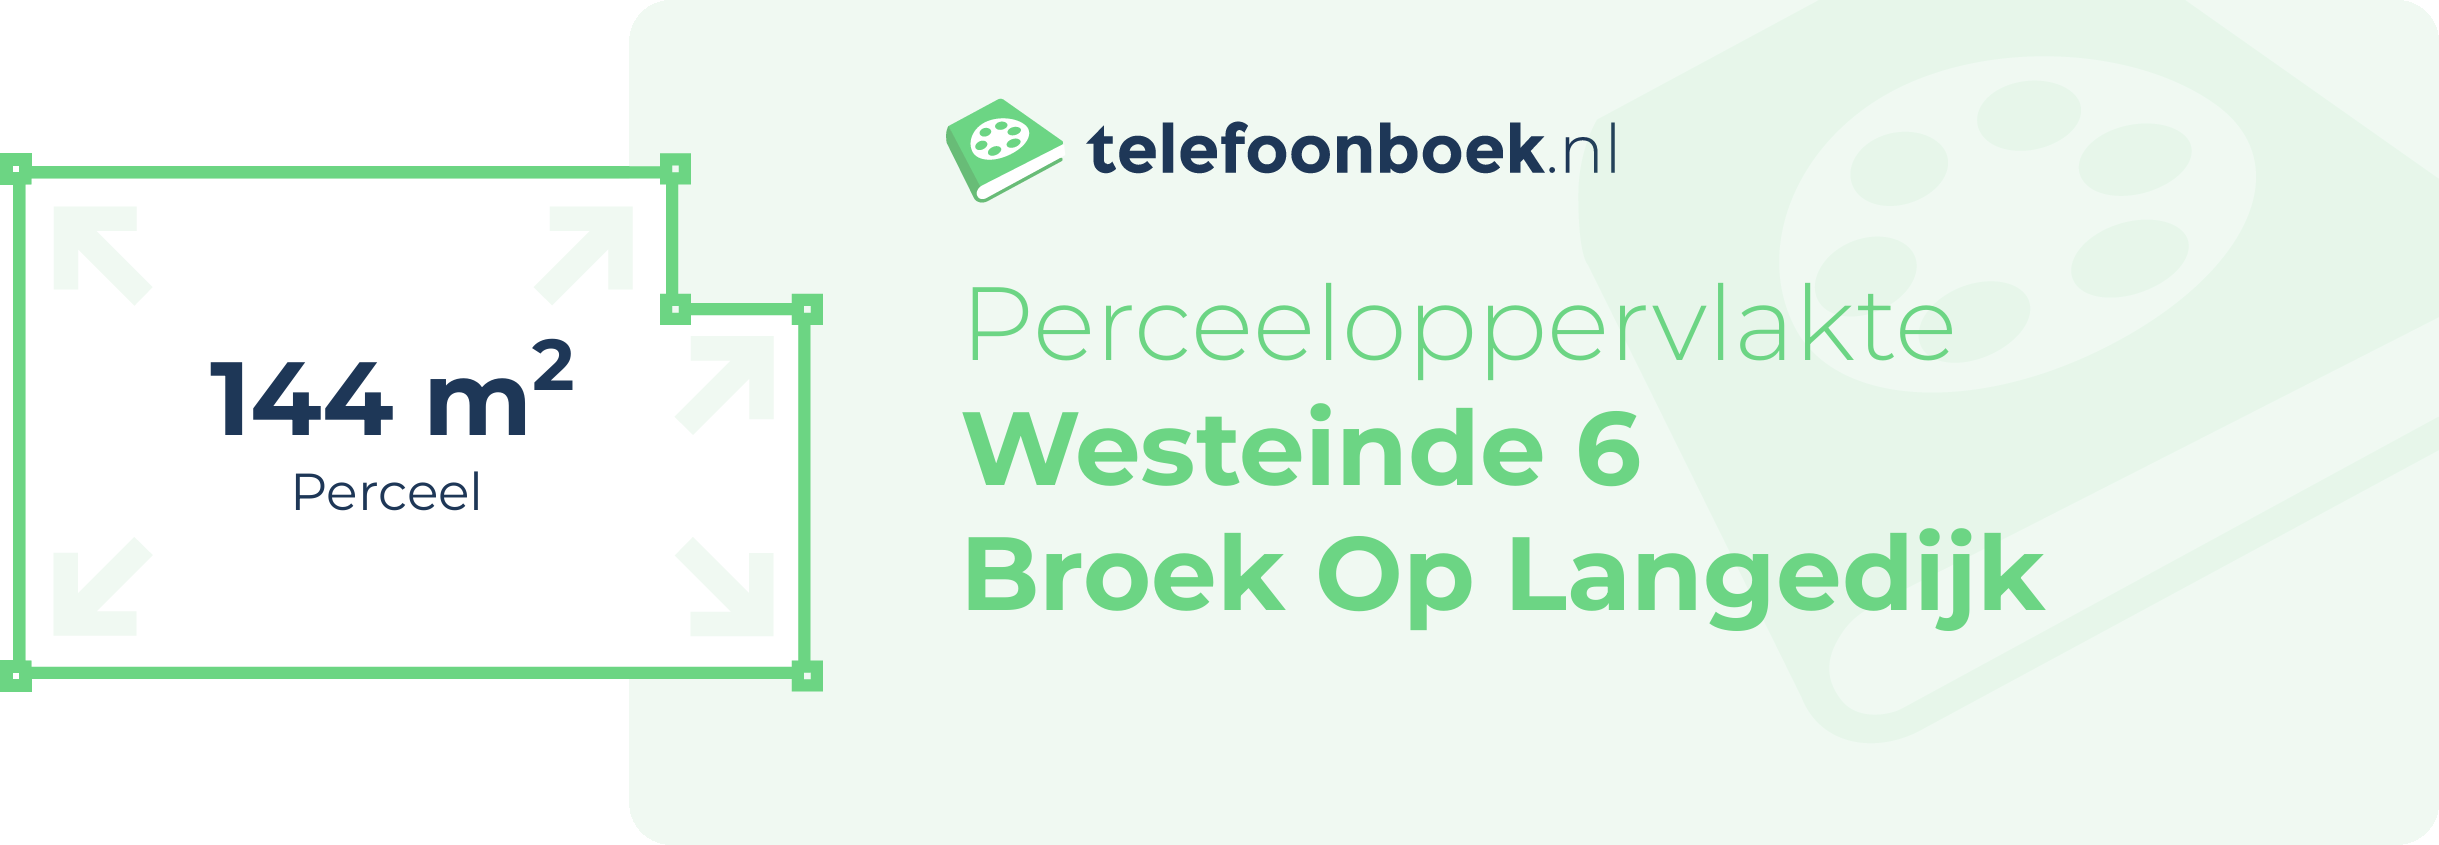 Perceeloppervlakte Westeinde 6 Broek Op Langedijk